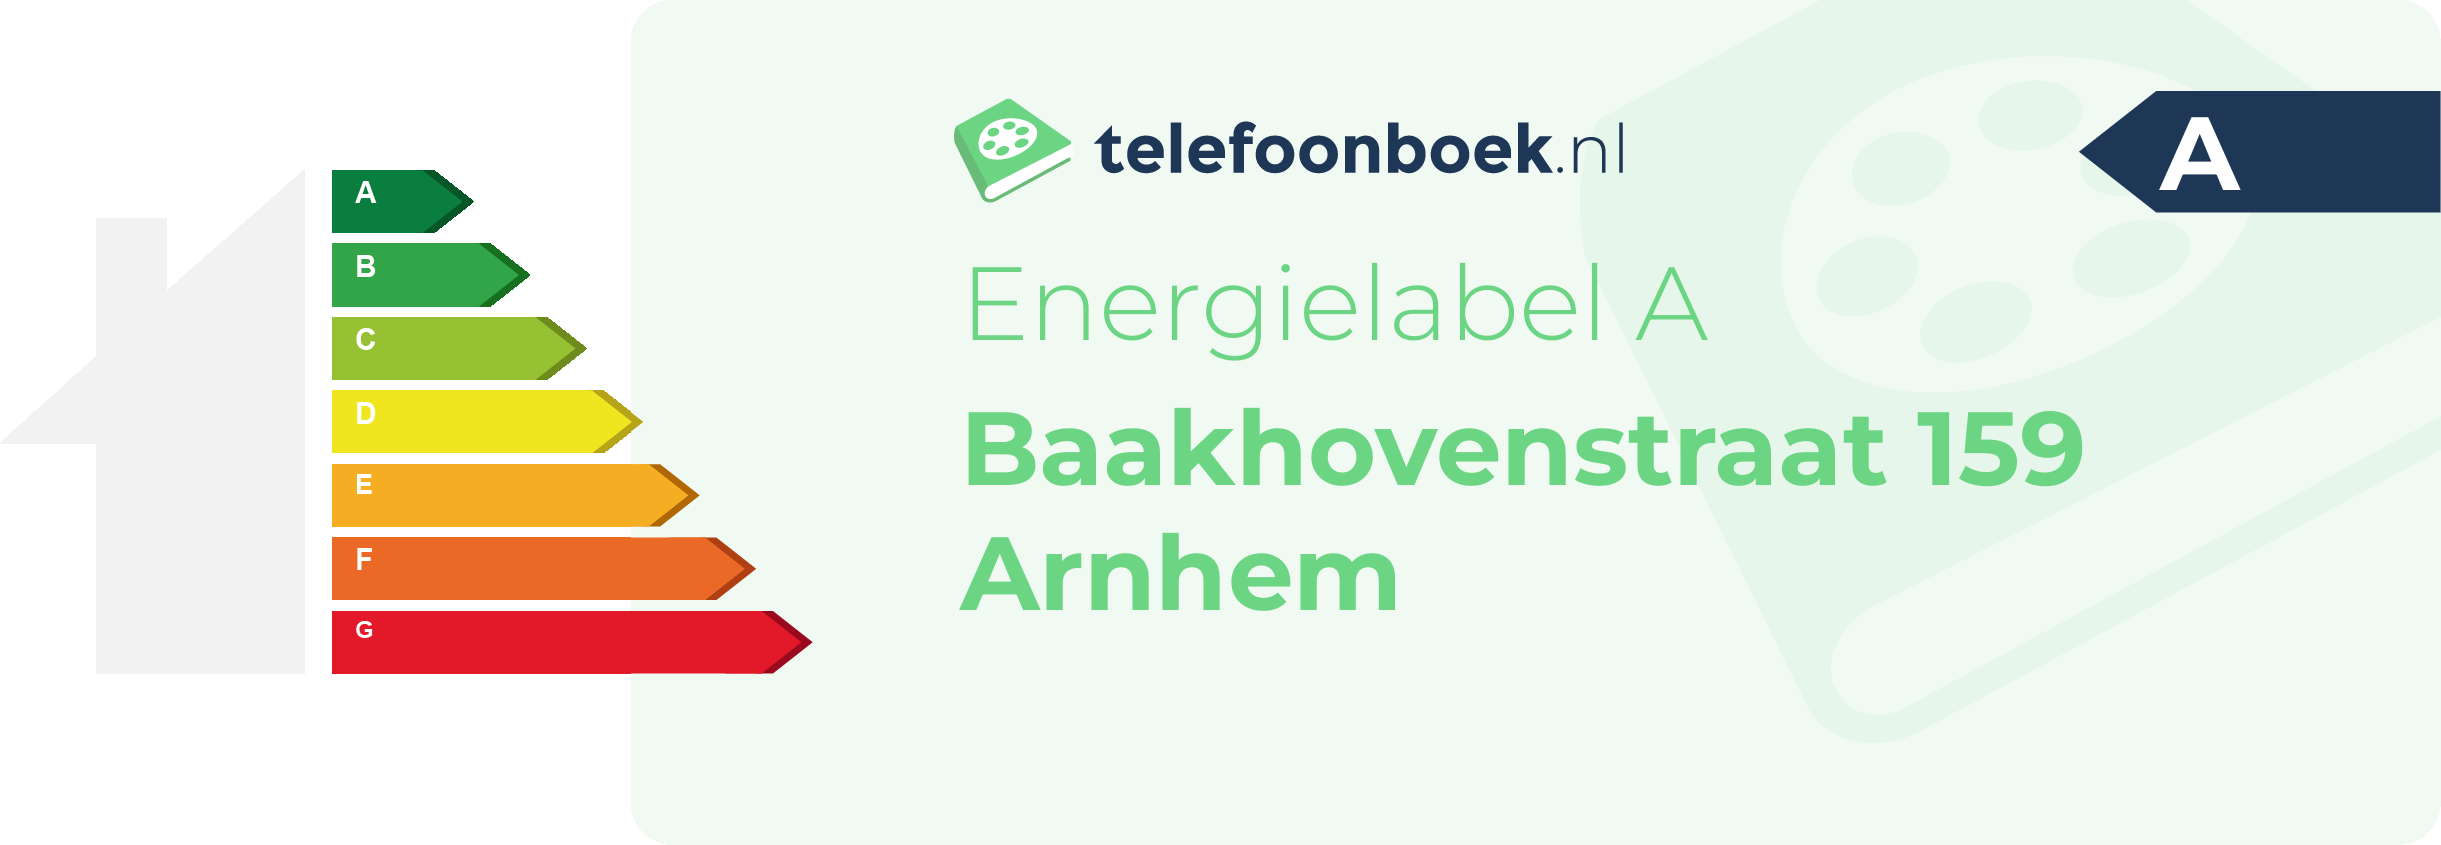 Energielabel Baakhovenstraat 159 Arnhem